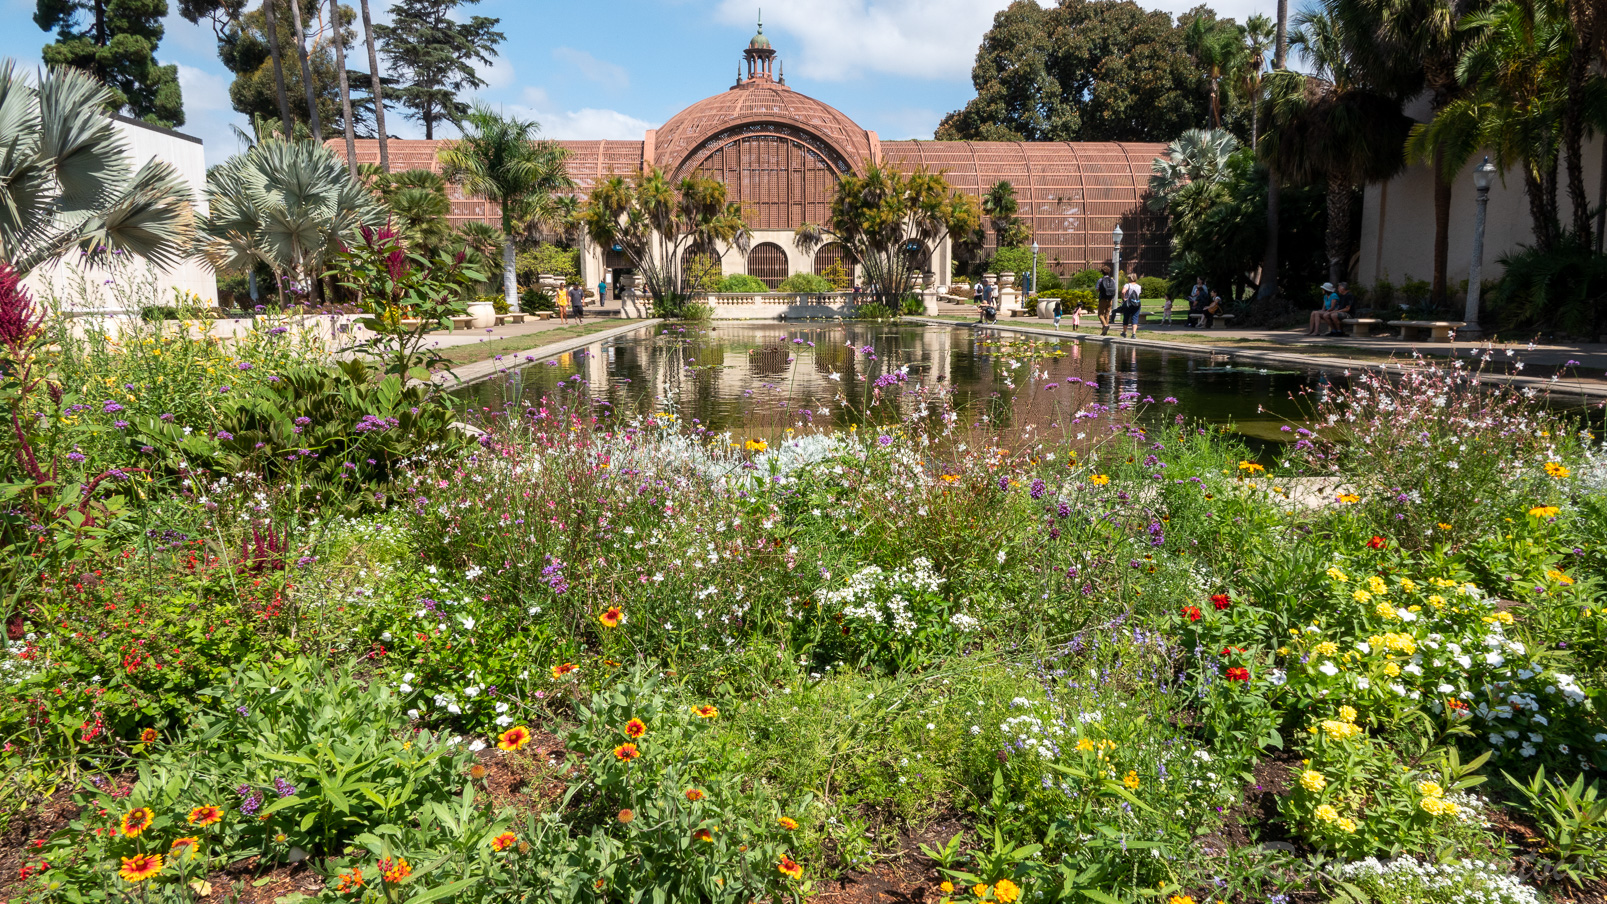 Le parc Balboa comprend un grand jardin botanique.